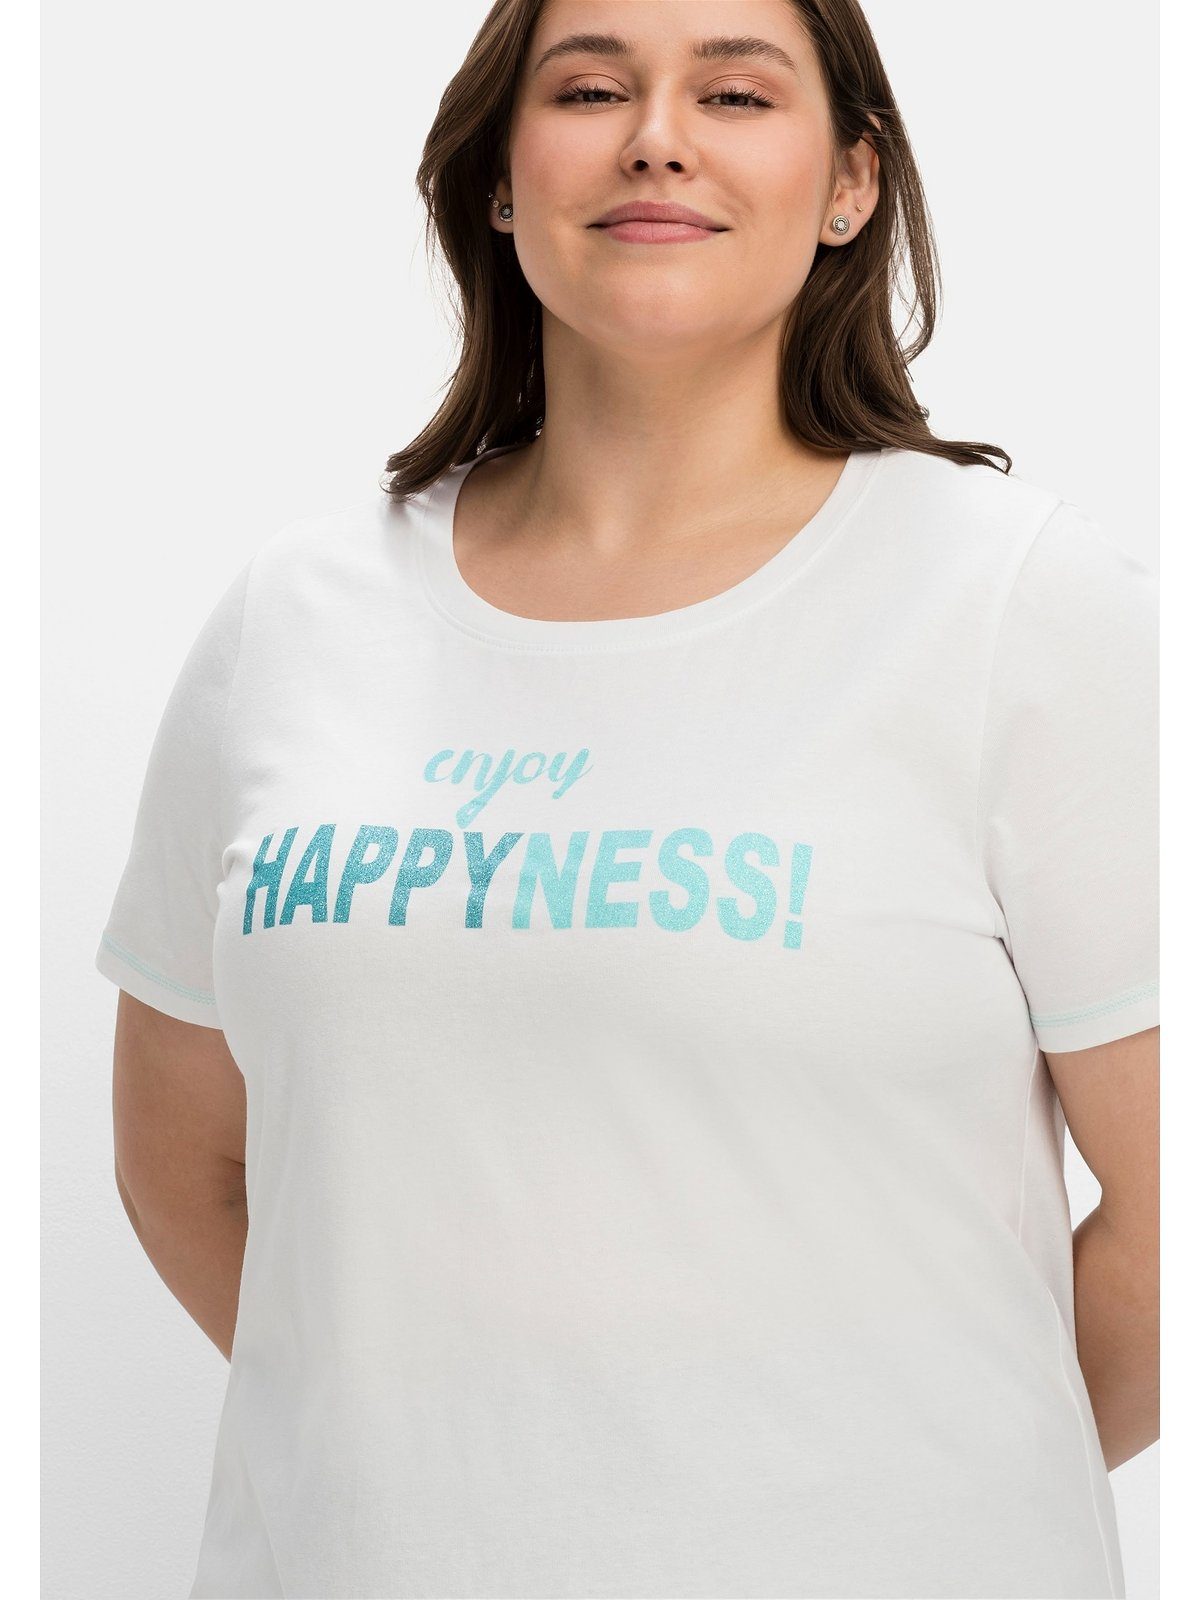 T-Shirt Sheego Große bedruckt mit tailliert weiß Größen Wordingprint, leicht